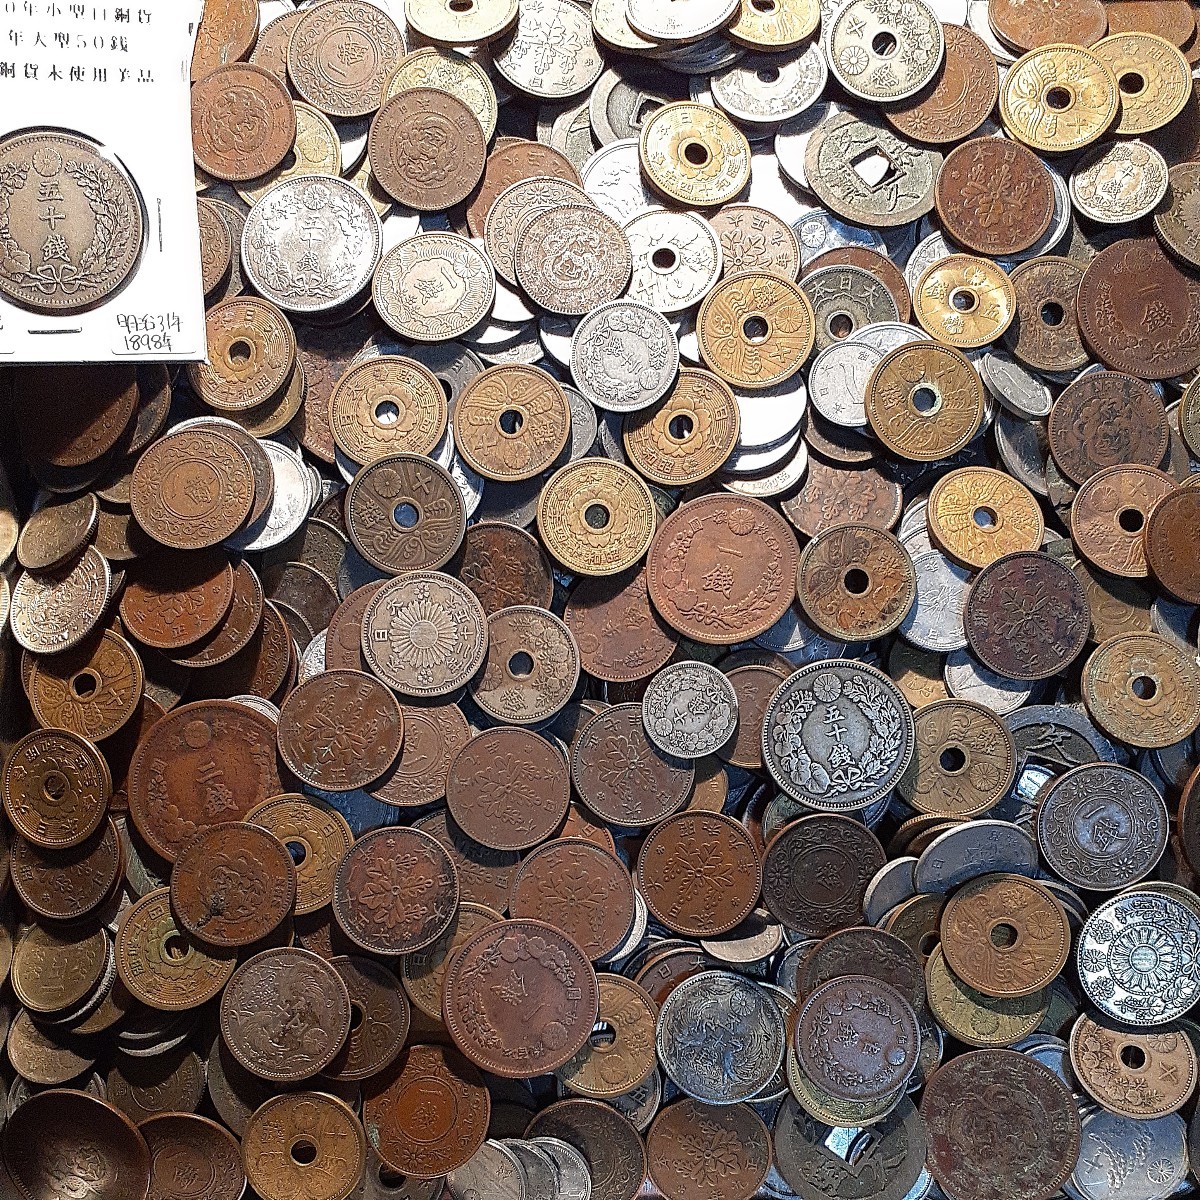 古銭まとめて2kg以上日本のコイン大量銀貨銅貨黄銅貨穴銭アルミ貨雑銭